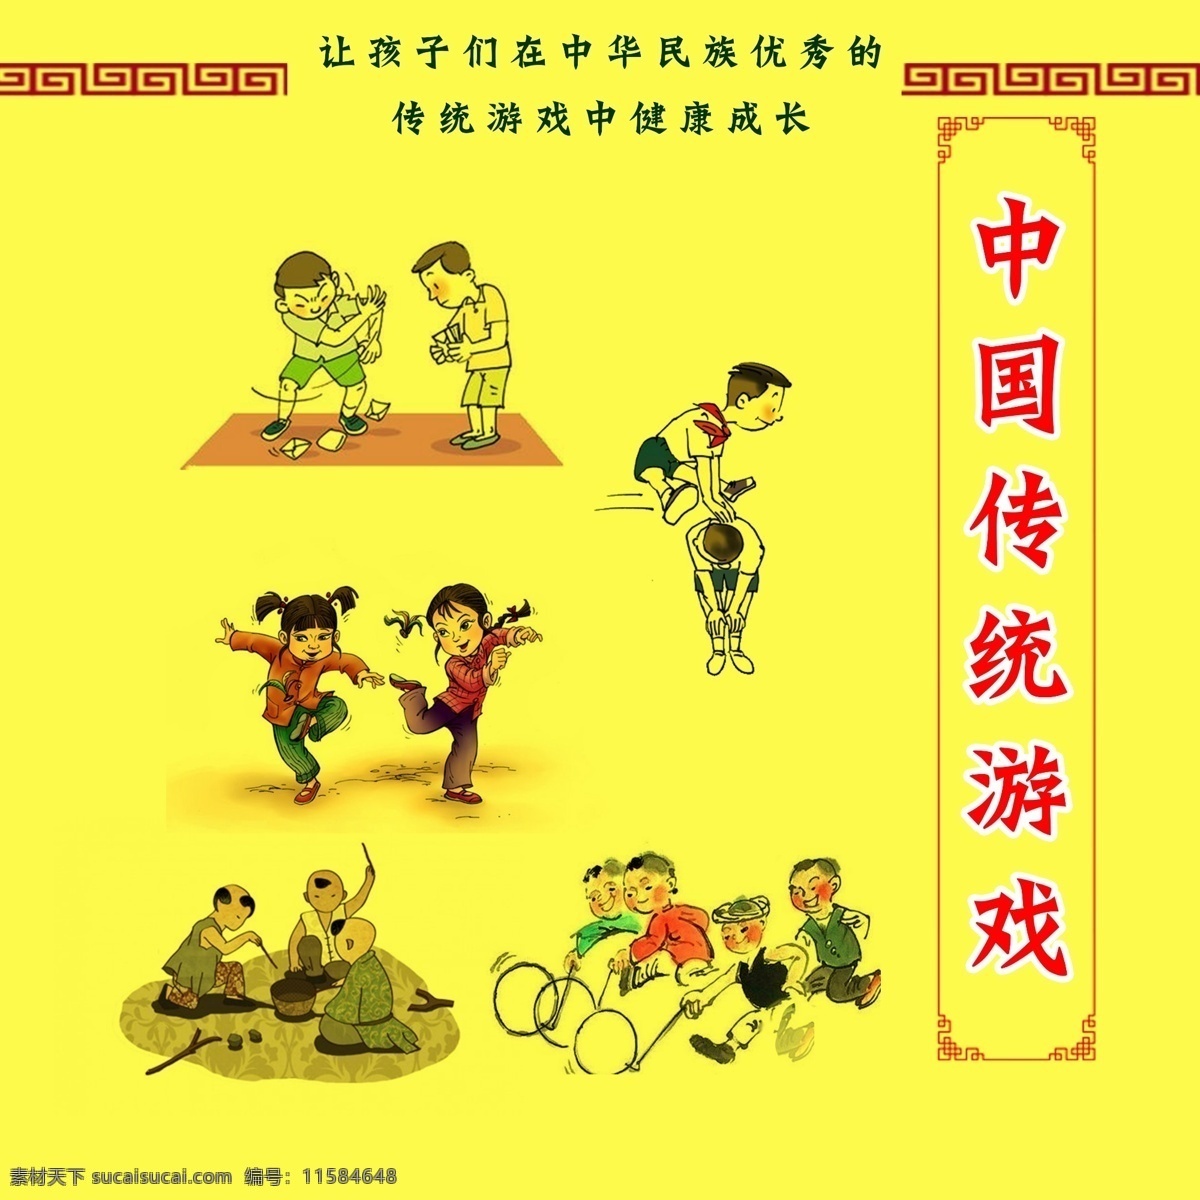 中国传统游戏 校园文化 踢毽子 跳马 推铁环 传统 游戏 文化艺术 传统文化